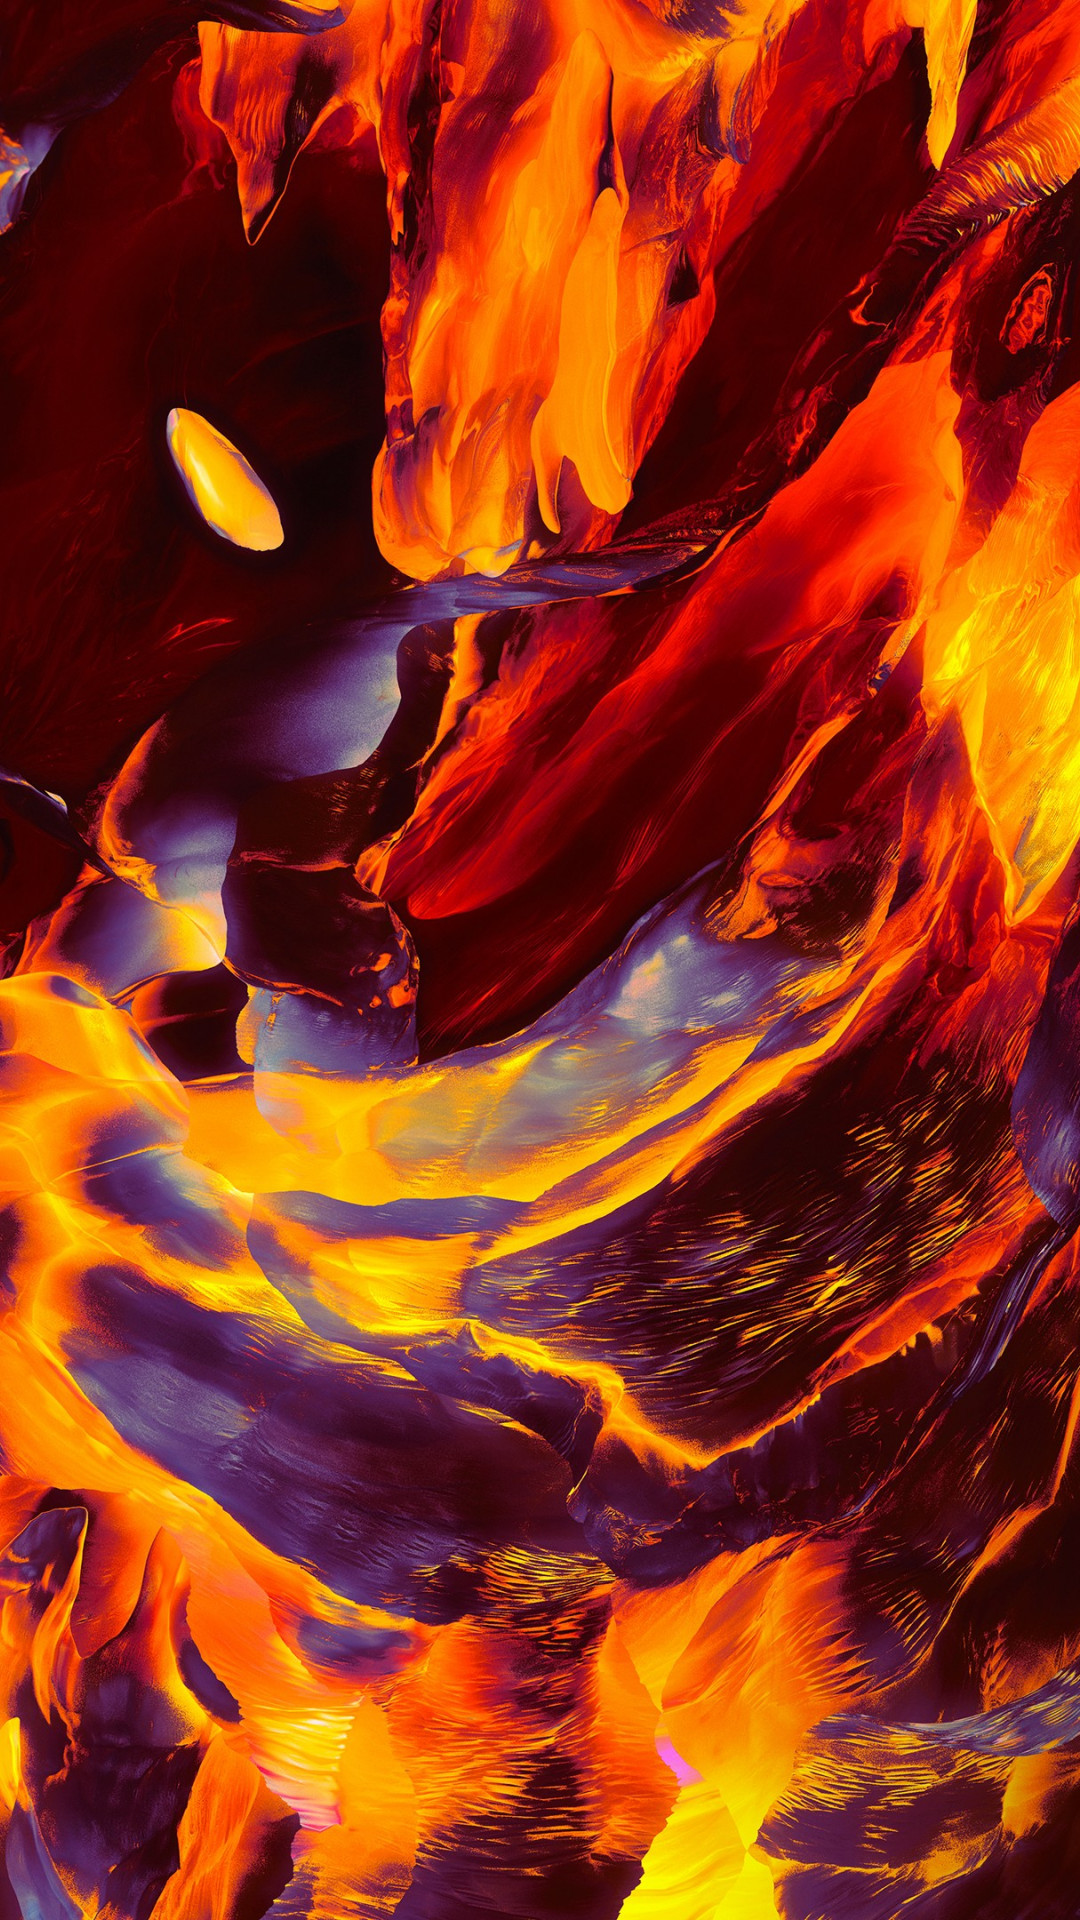 OnePlus Fire wallpaper 1080x1920